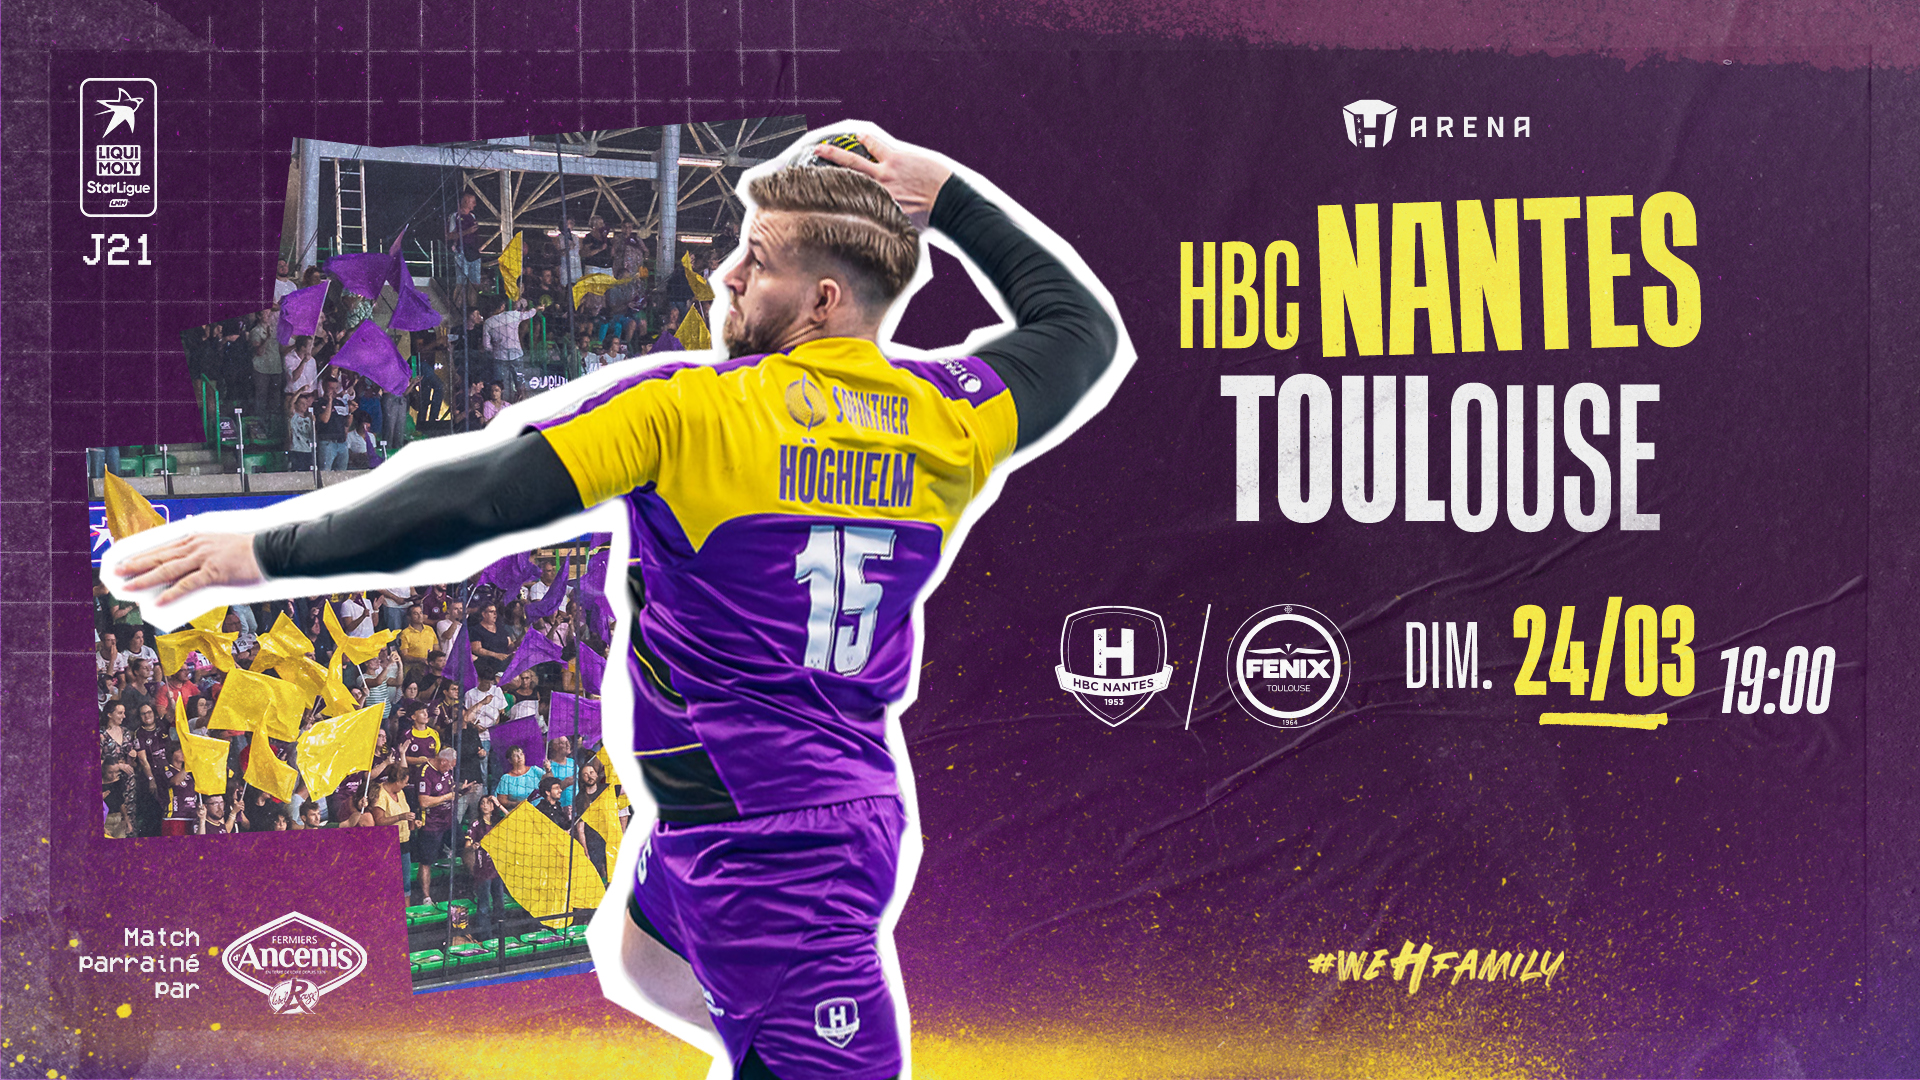 HBC Nantes - Toulouse : Programme de match